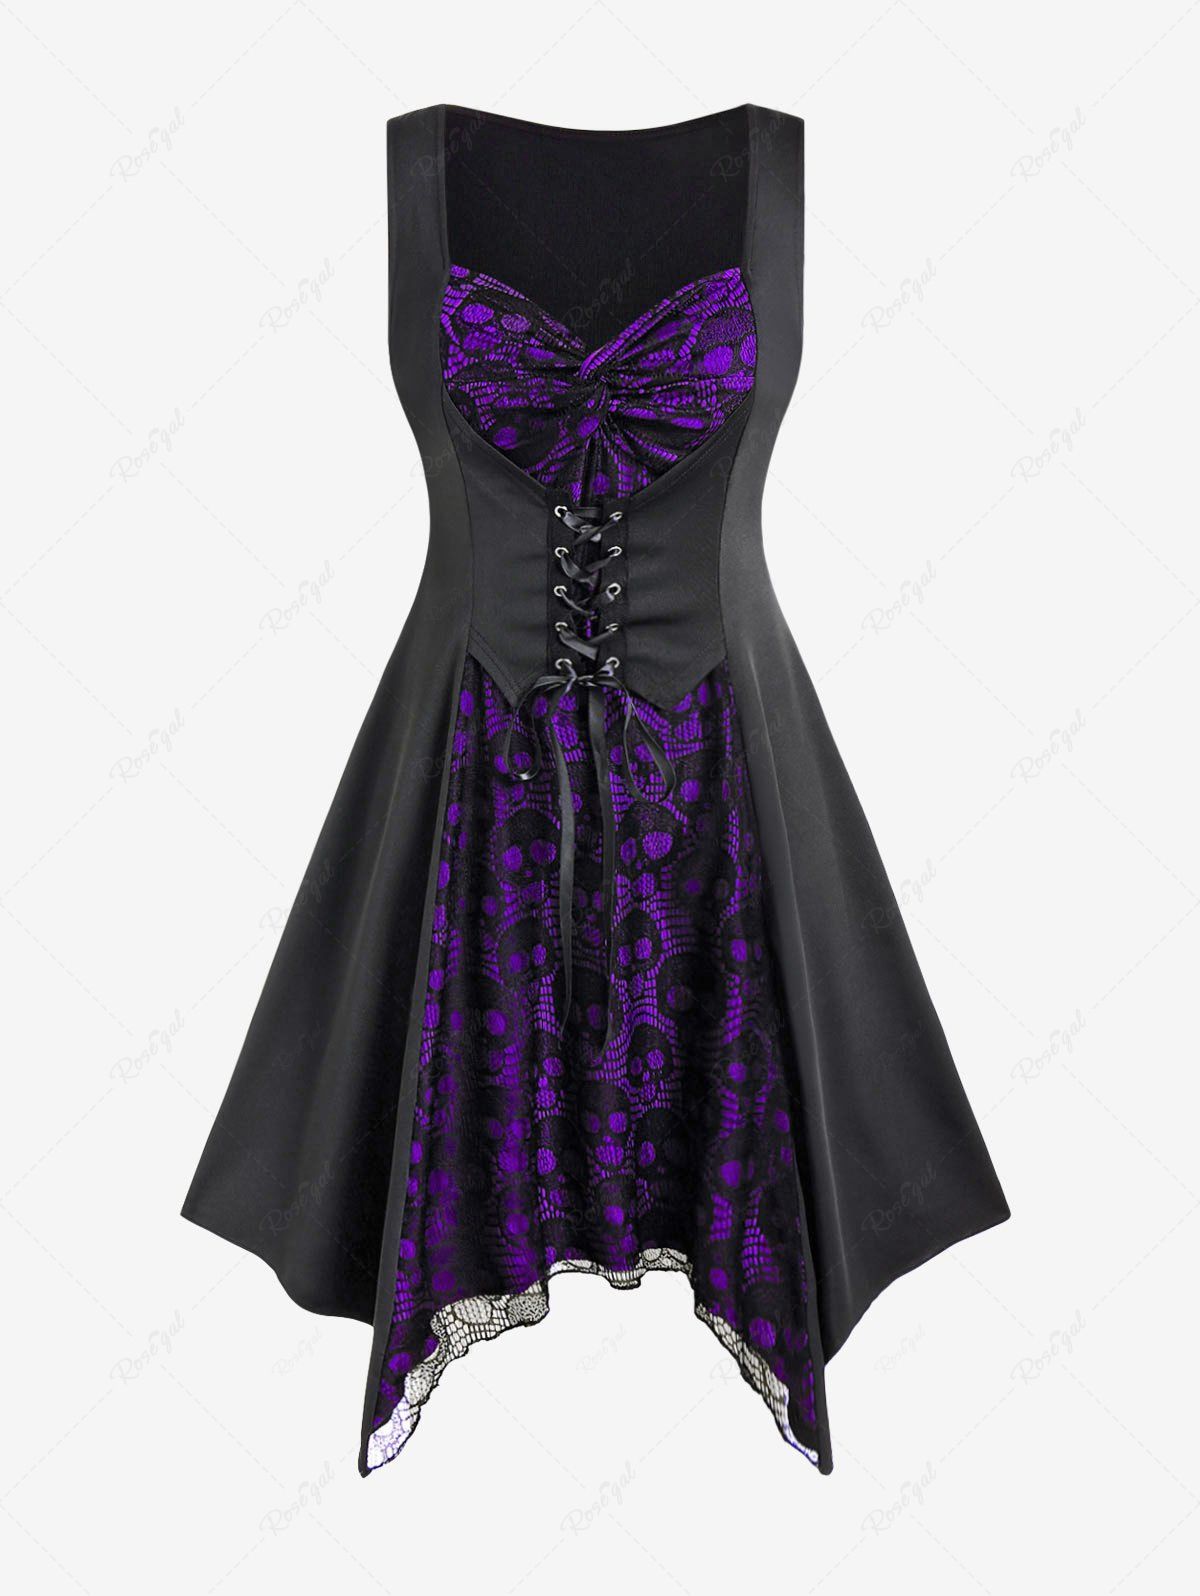 Fashion Gothic Skull Lace Overlay Lace-up Asymmetrical Sleeveless Midi Dress  